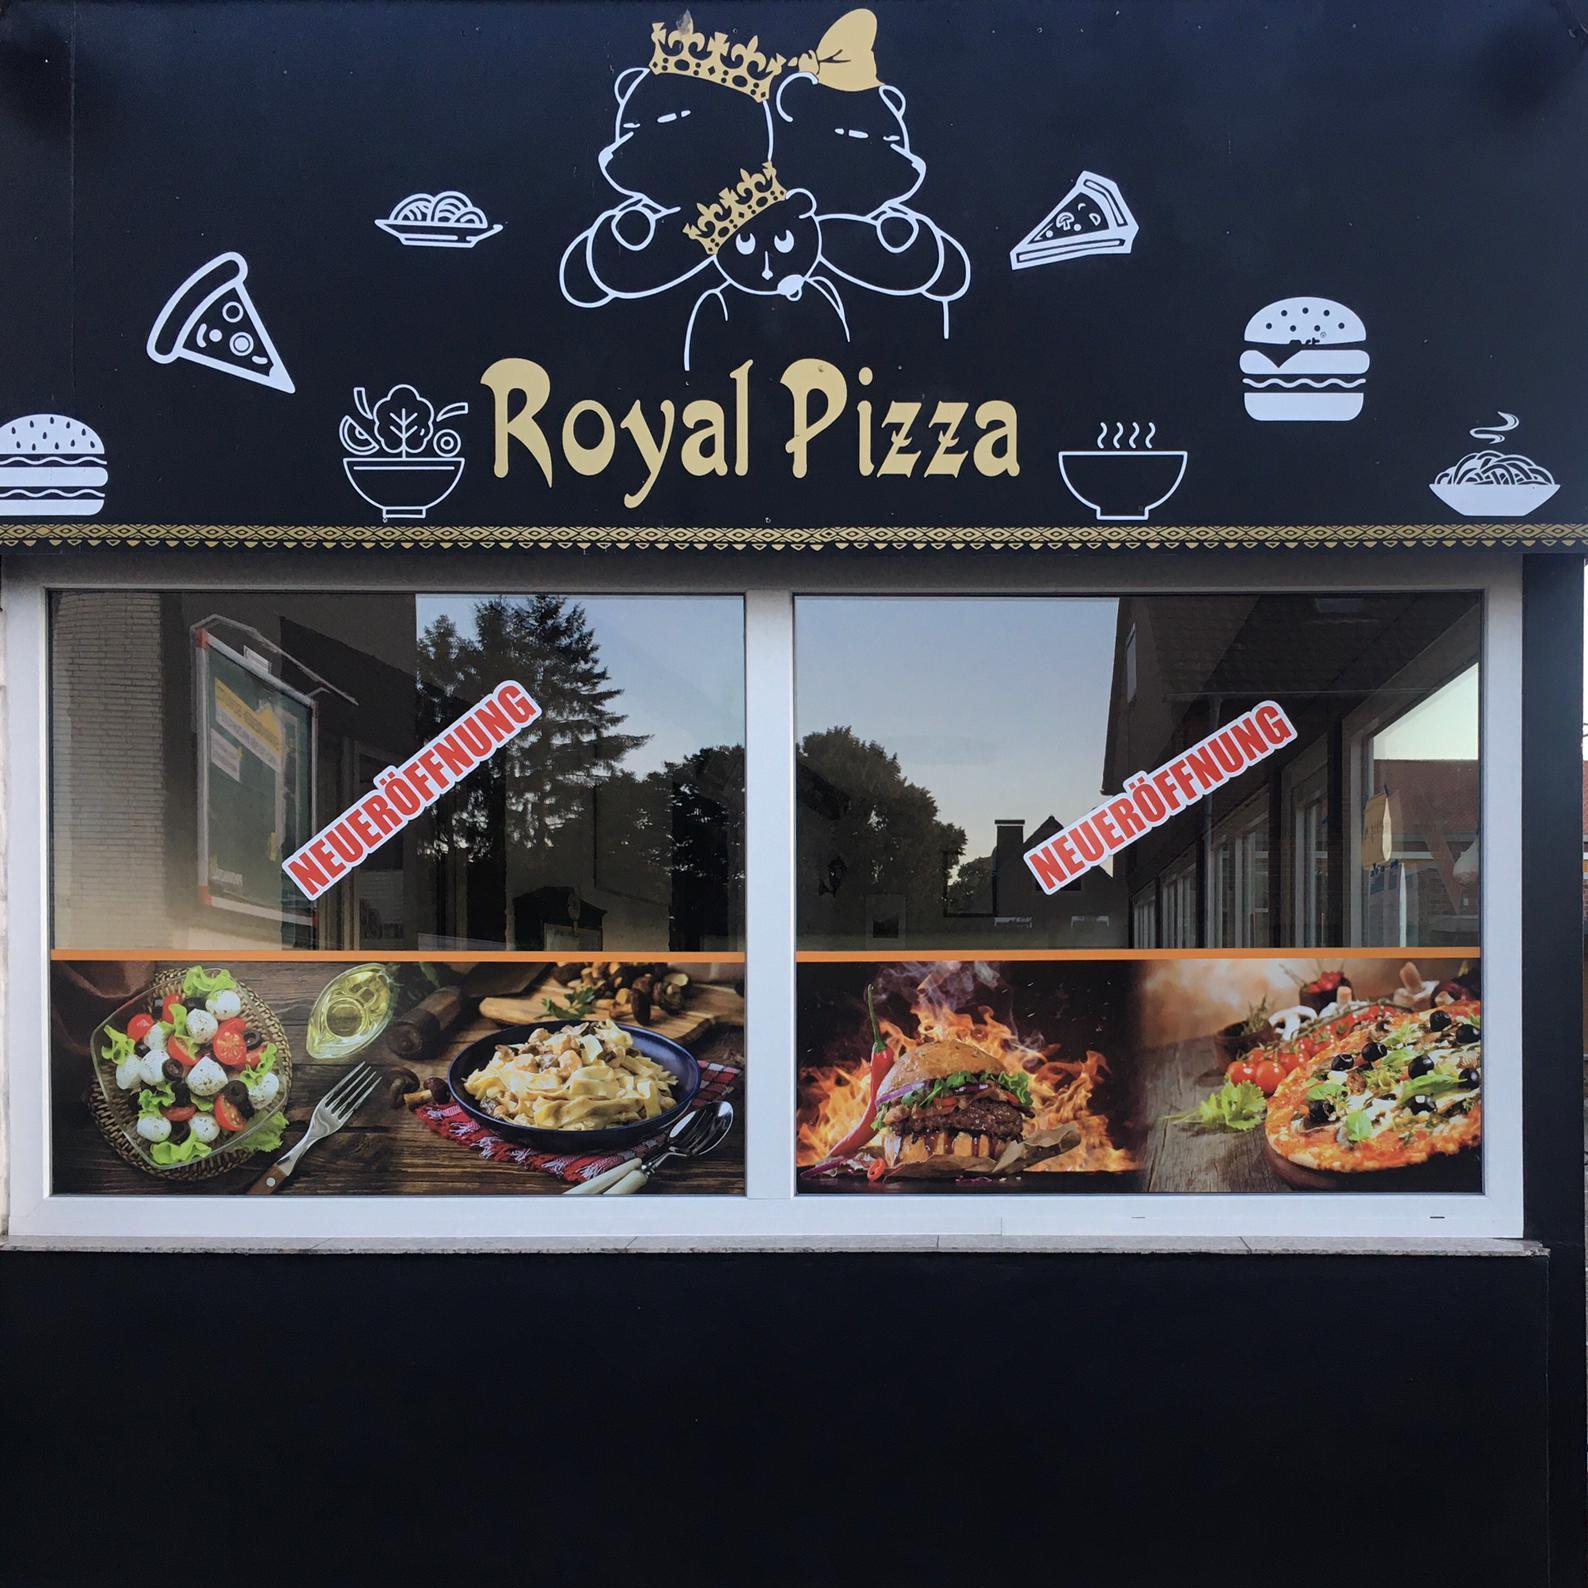 Restaurant "Royal Pizza" in Erkelenz